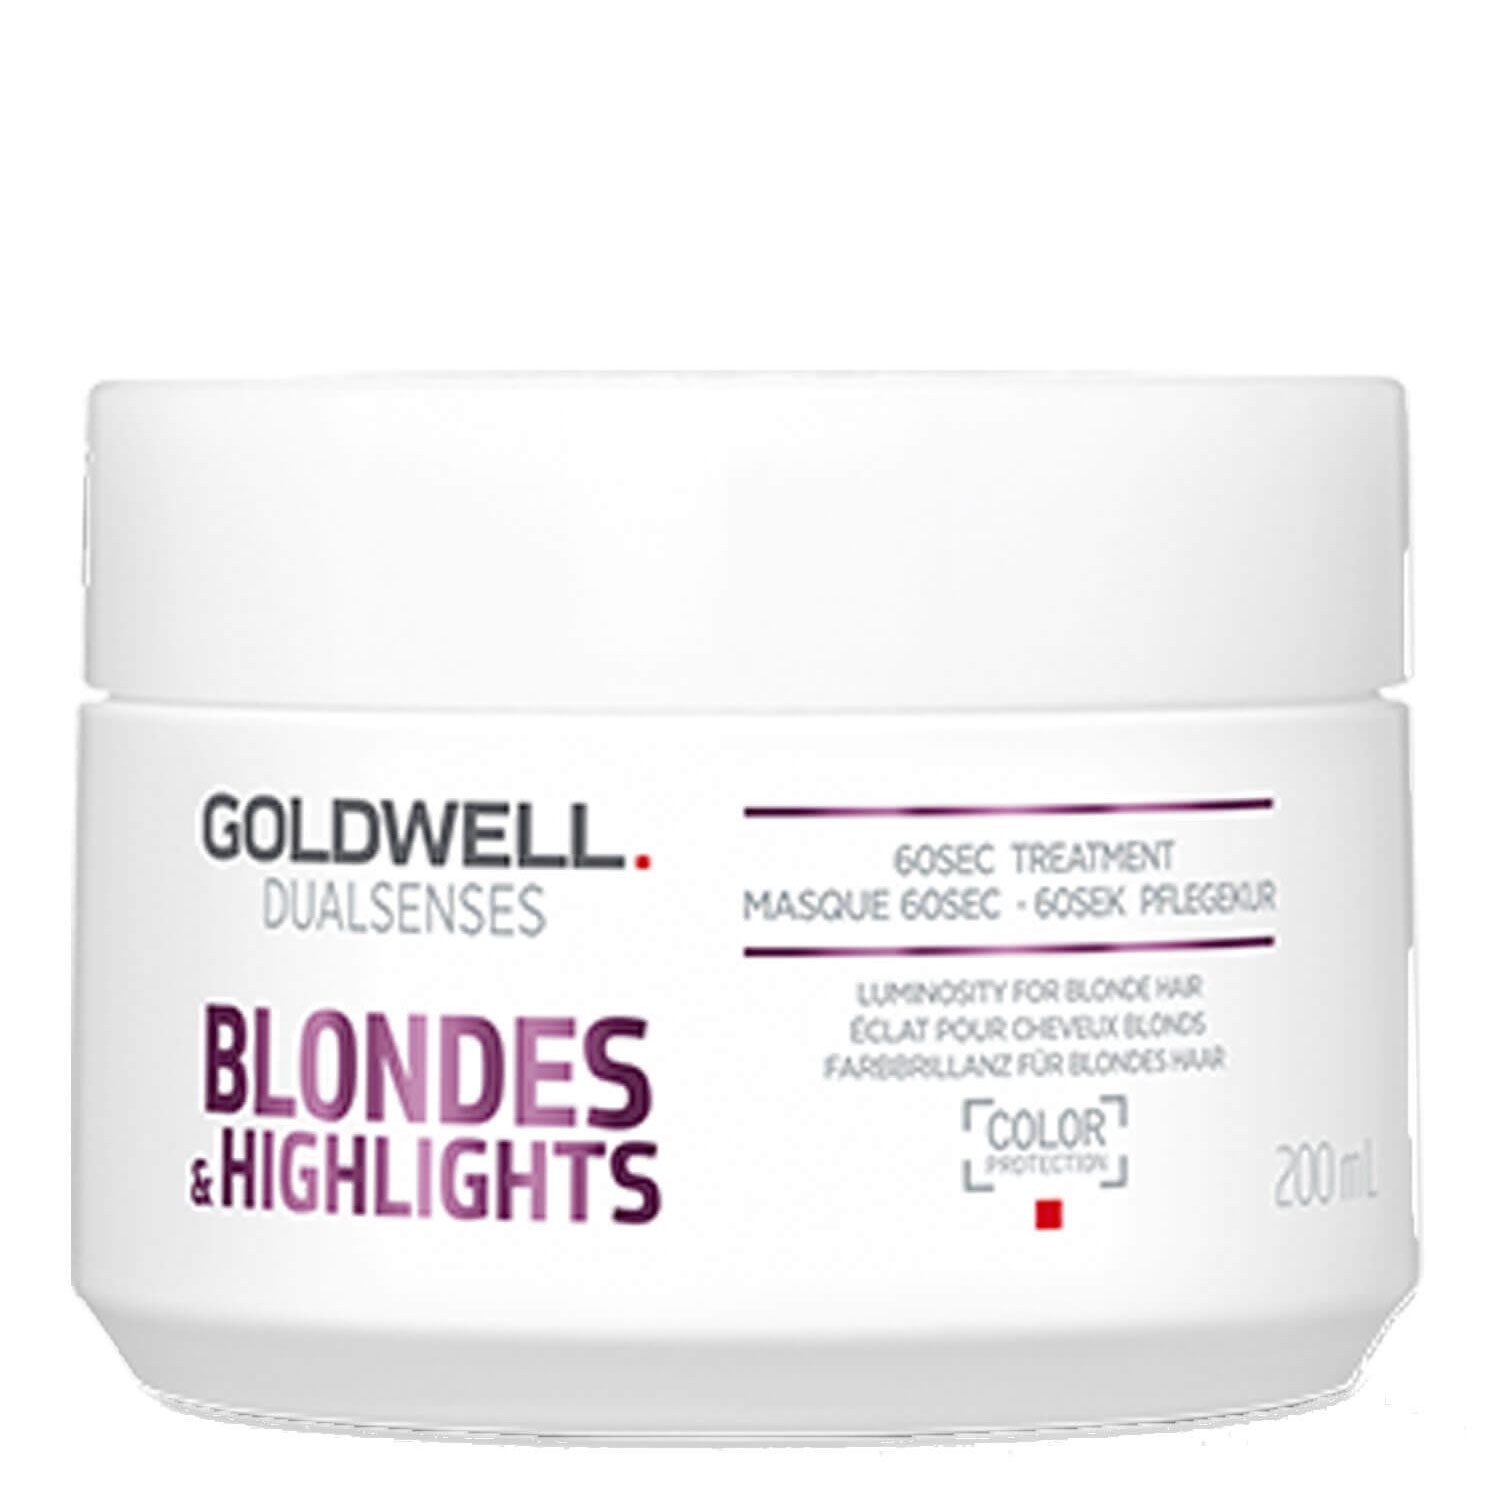 Produktbild von Dualsenses Blondes & Highlights - 60s Treatment